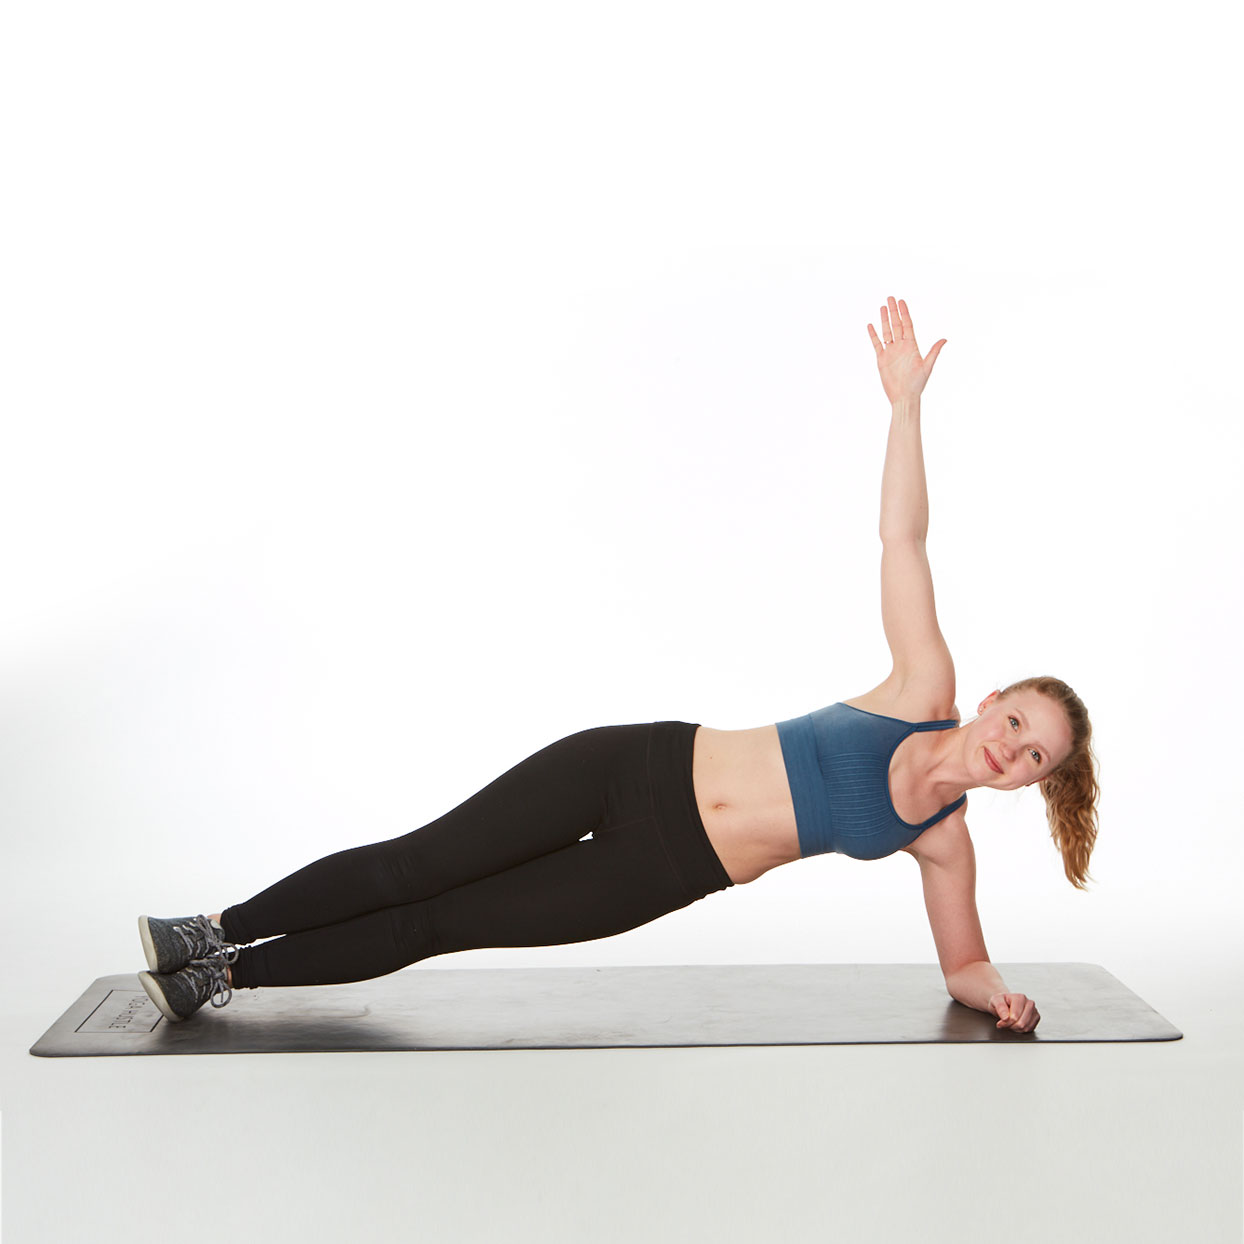 Hướng dẫn bài tập Plank kết hợp nâng tay